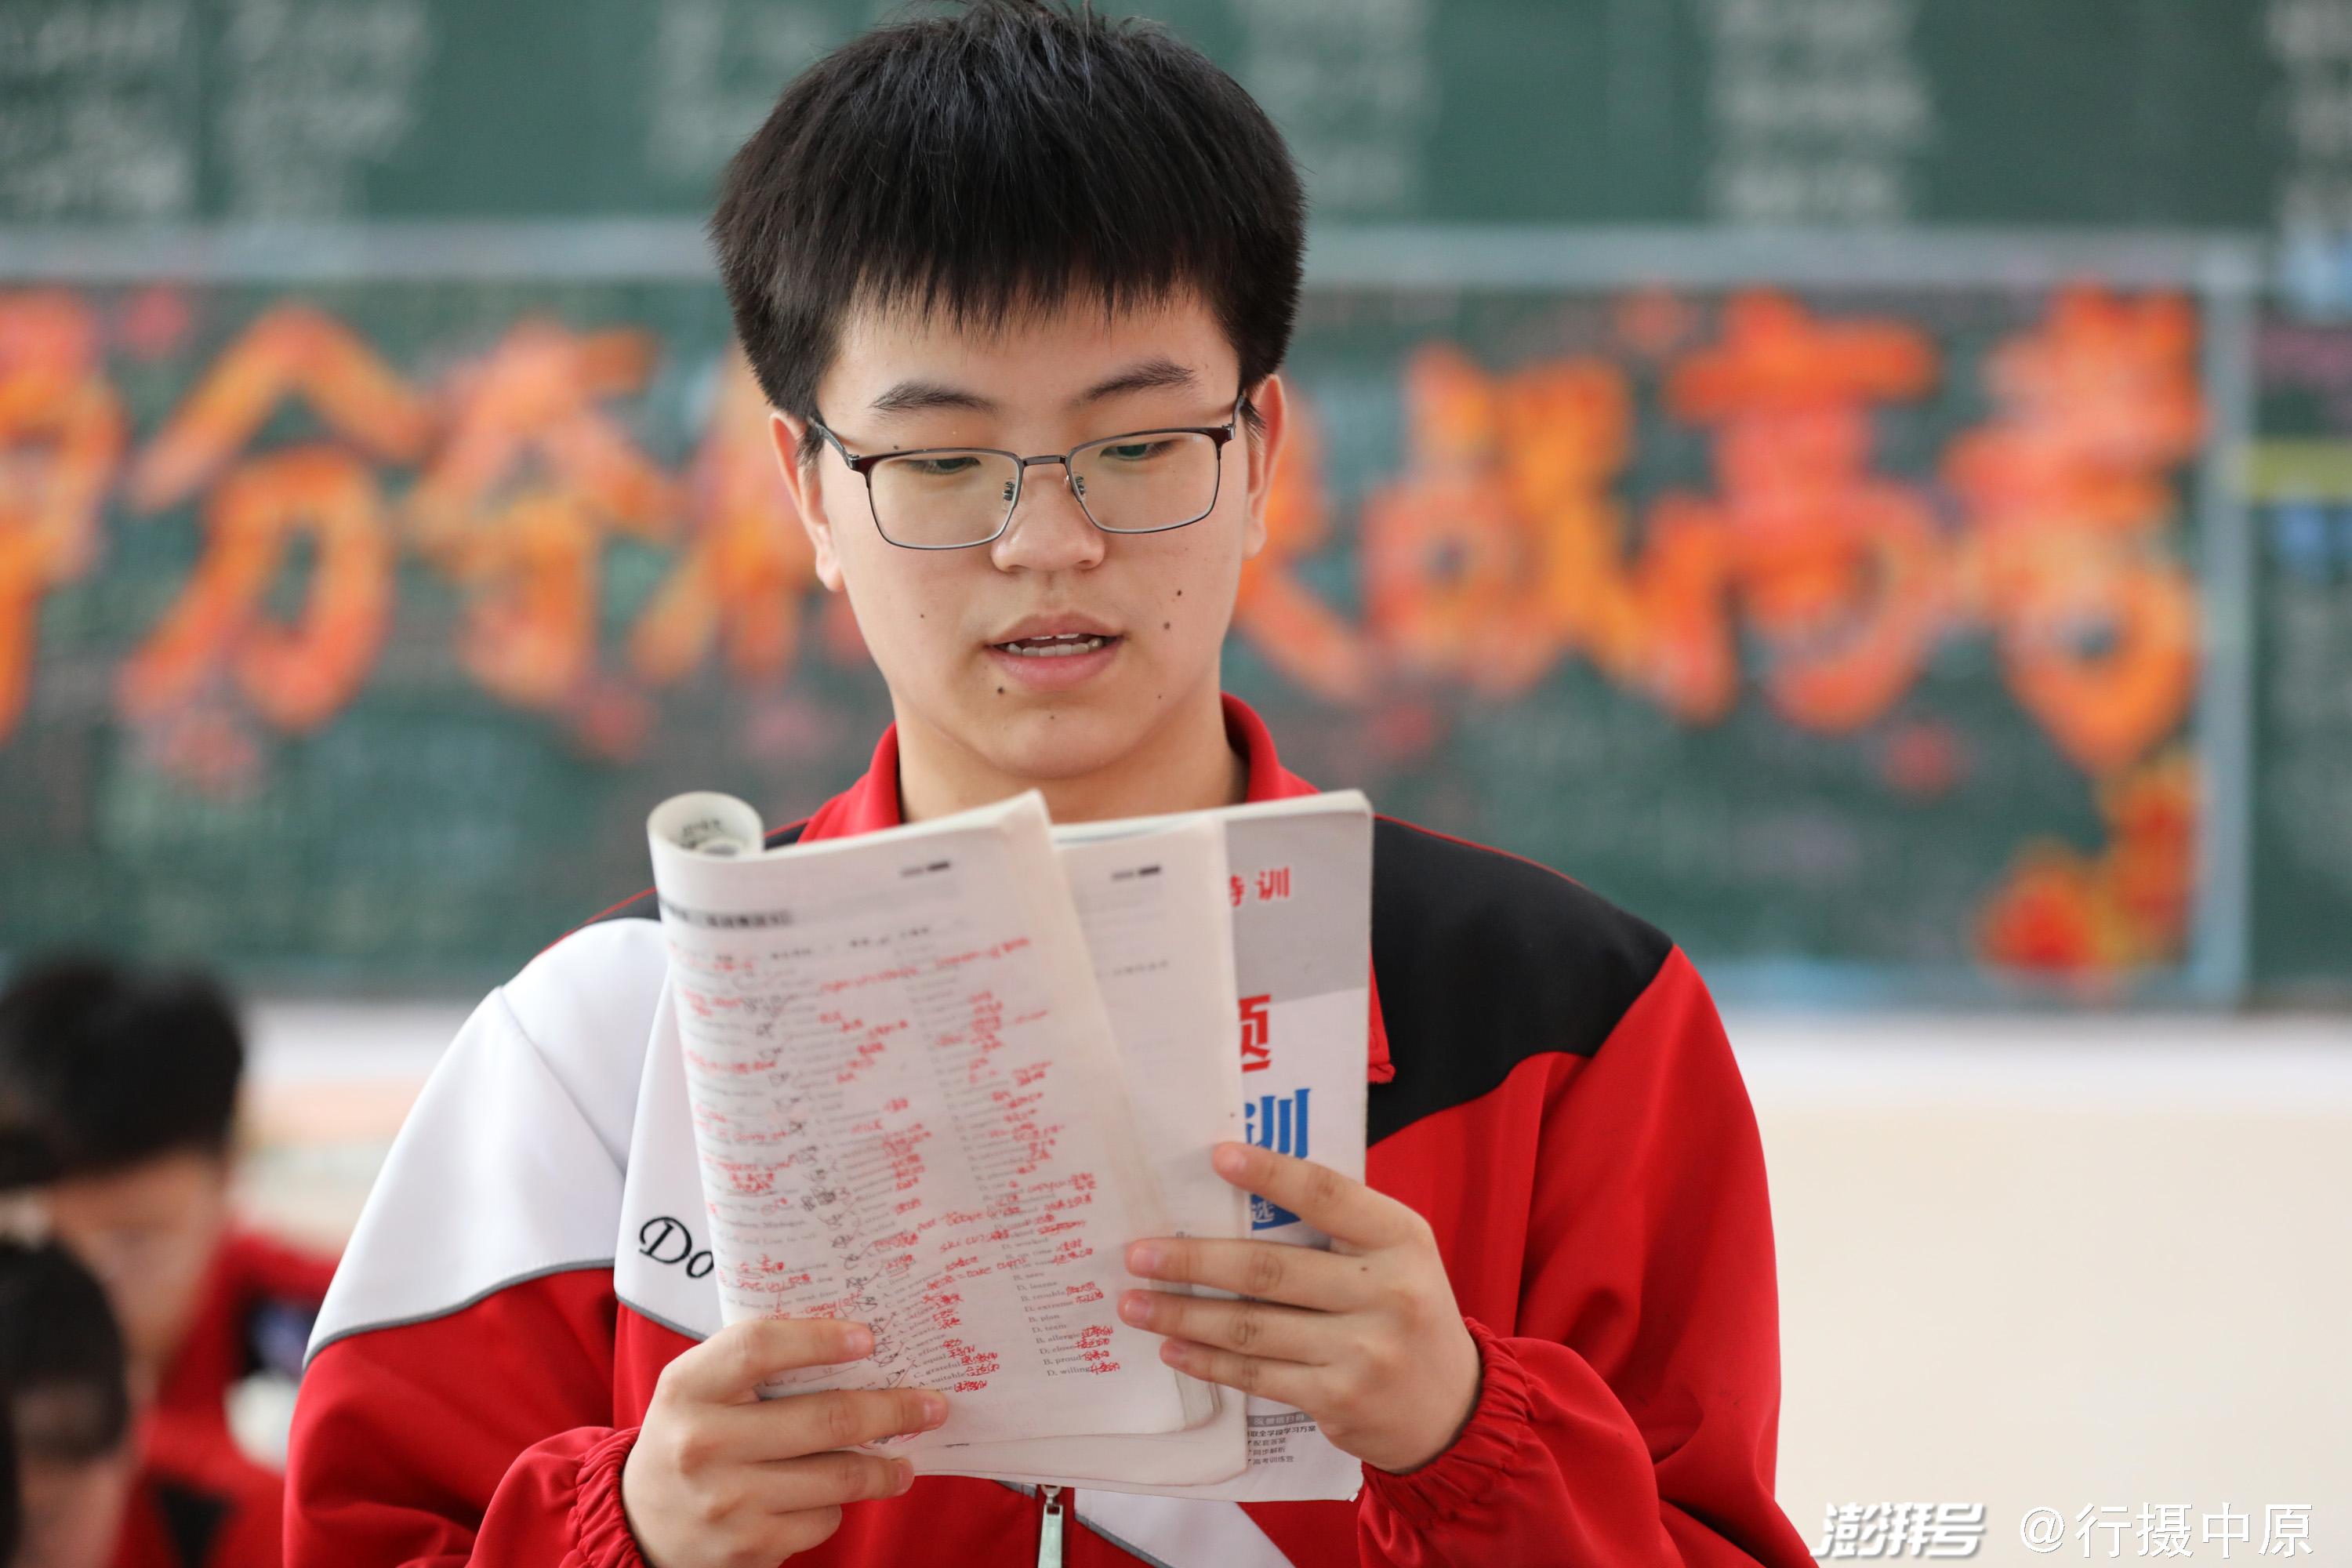 6月5日,河南省焦作市温县实验高中一名高三学生在教室内复习备考